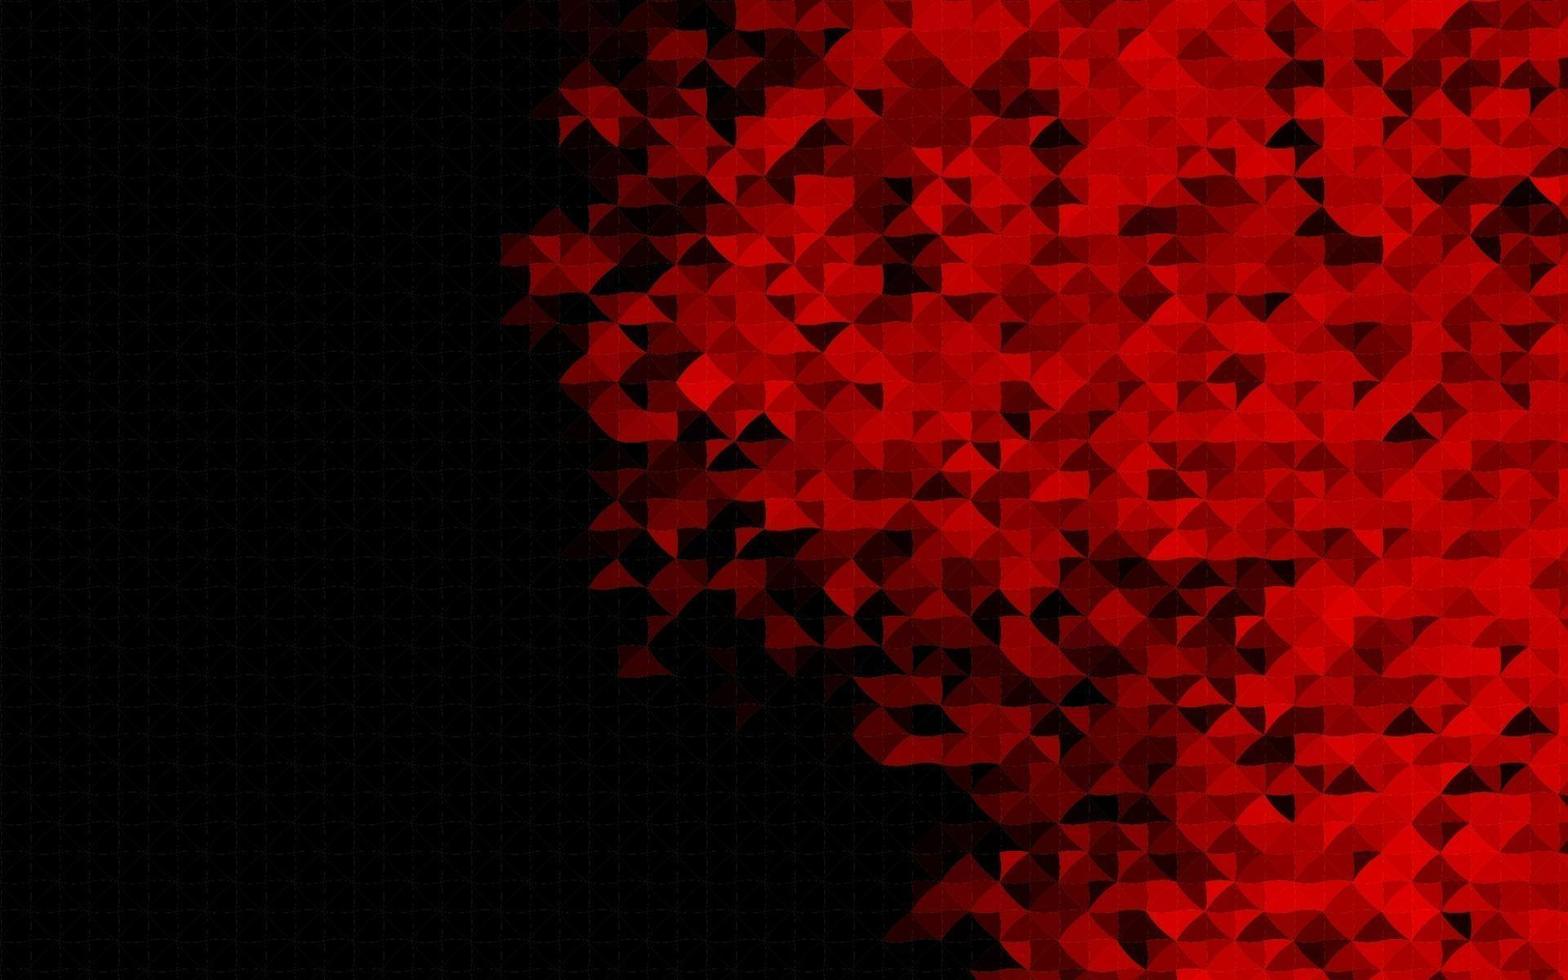 toile de fond de vecteur rouge foncé avec des lignes, des triangles.